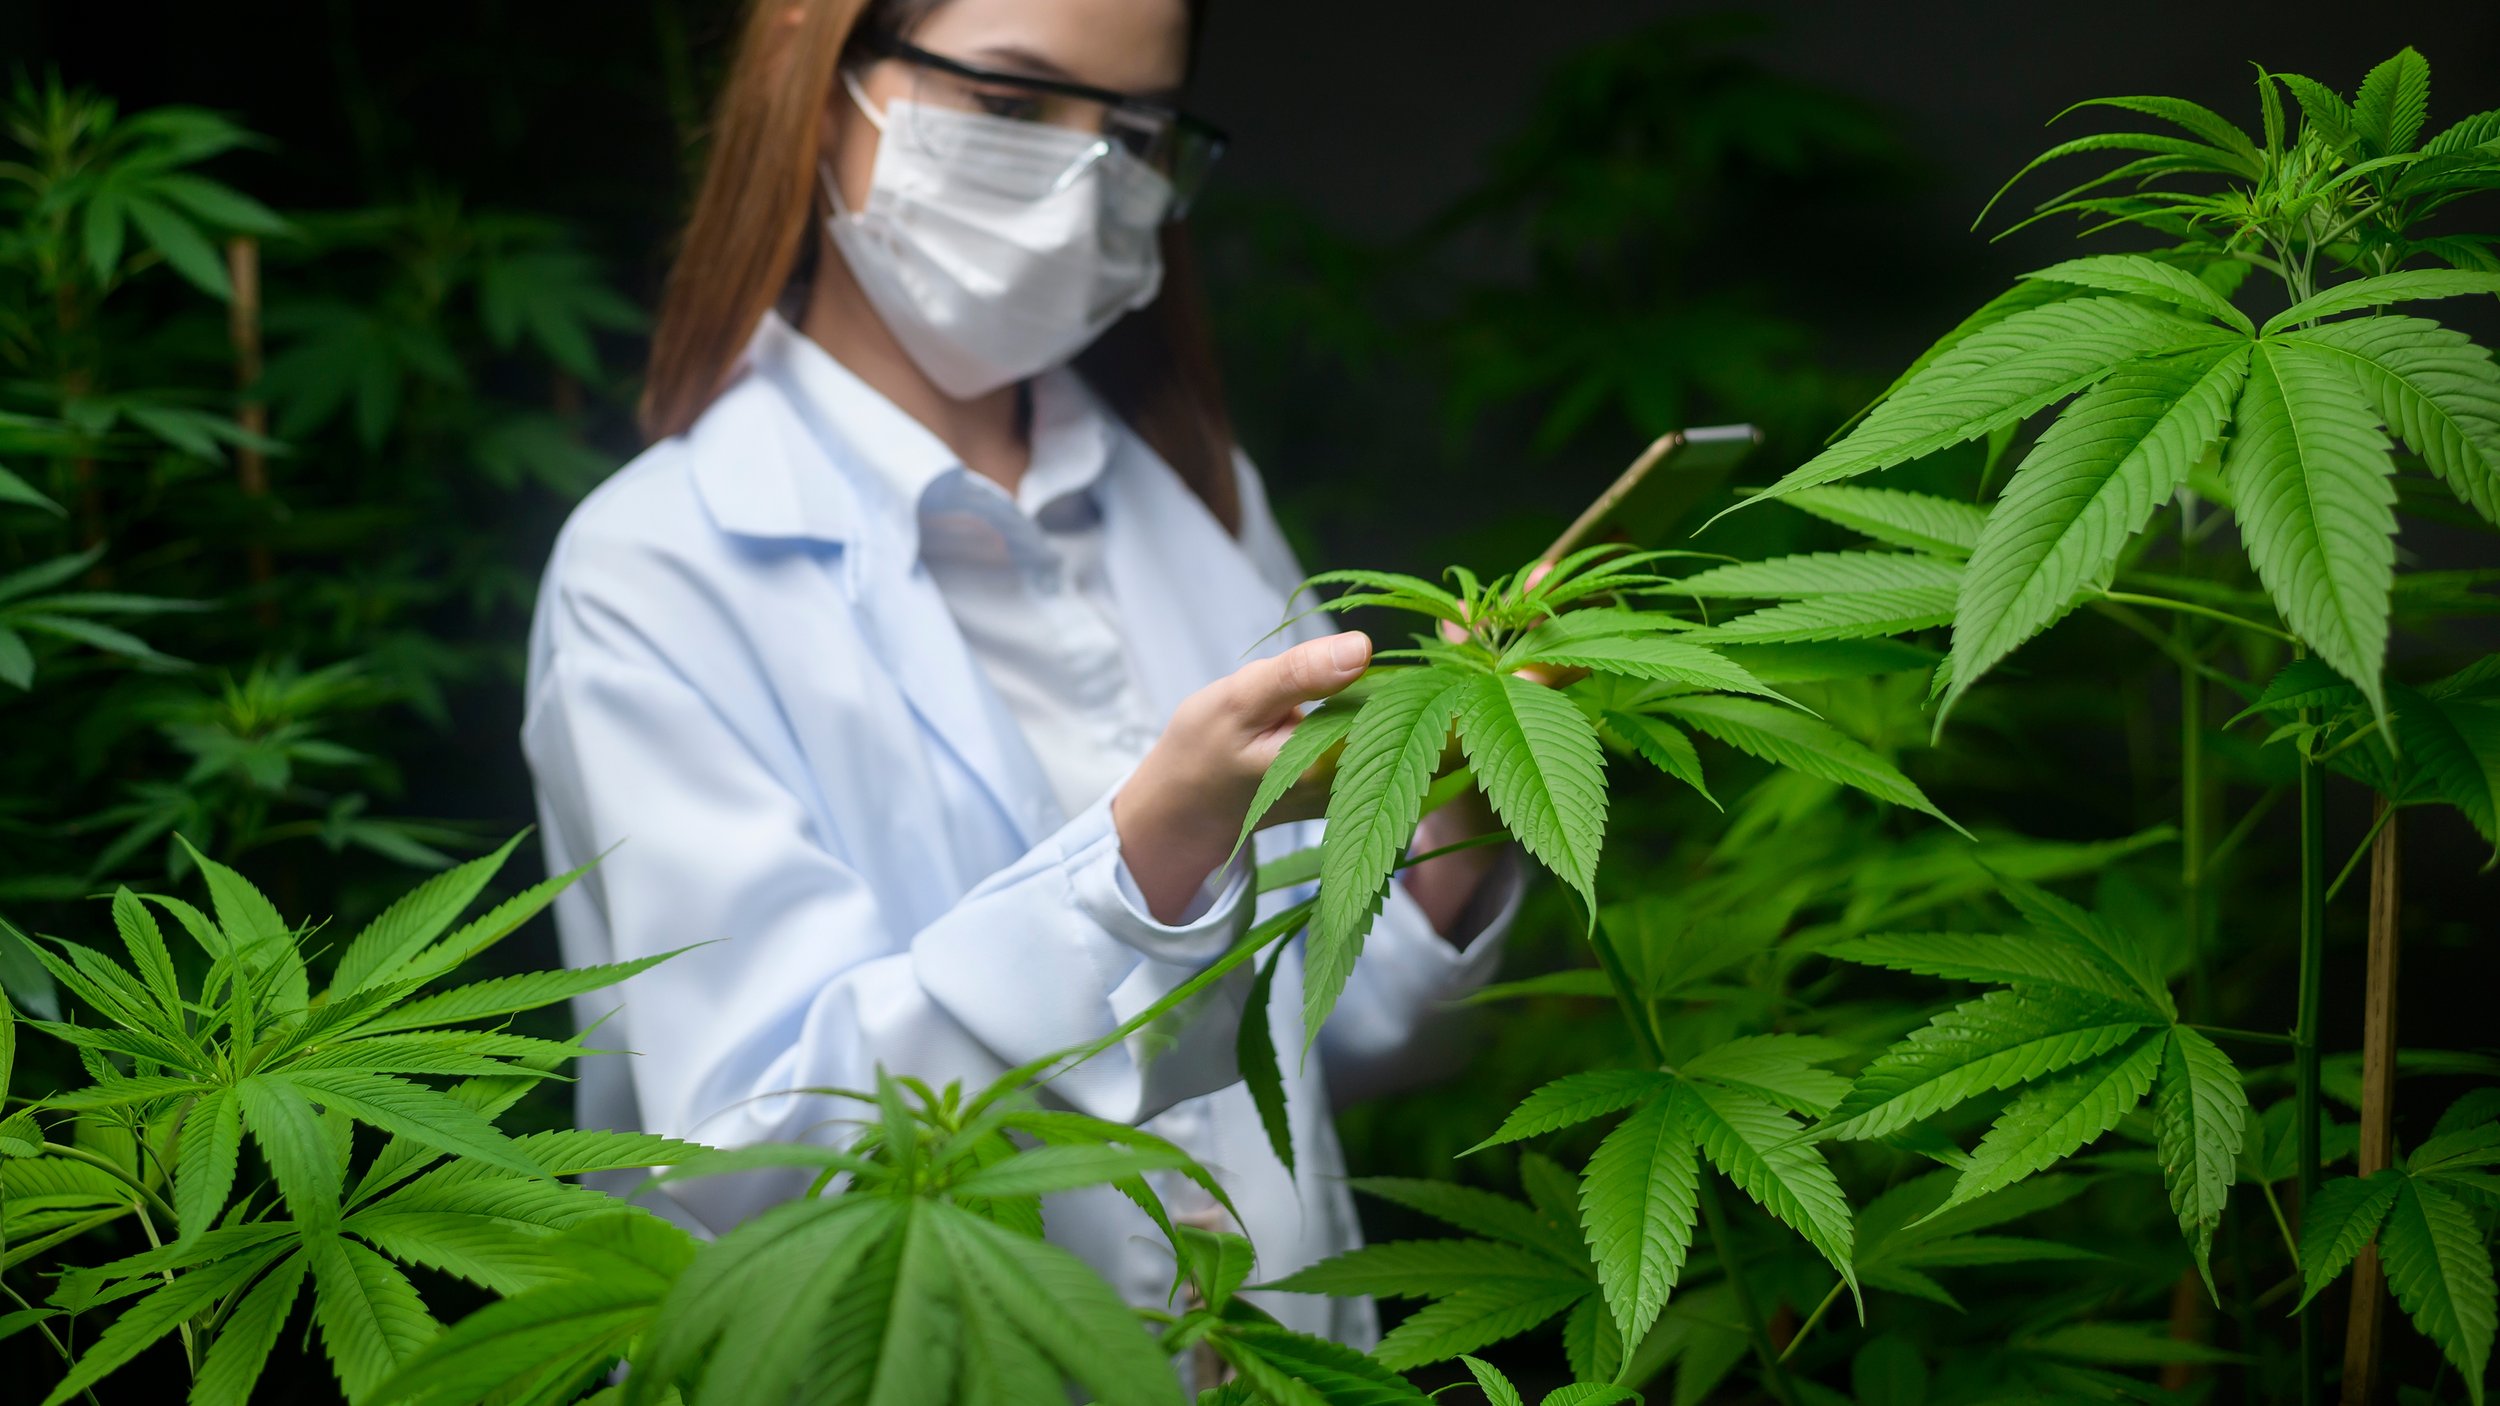 Blog de actualizaciones: ¿Cuál fue el comportamiento de la industria del cannabis en julio de 2021?